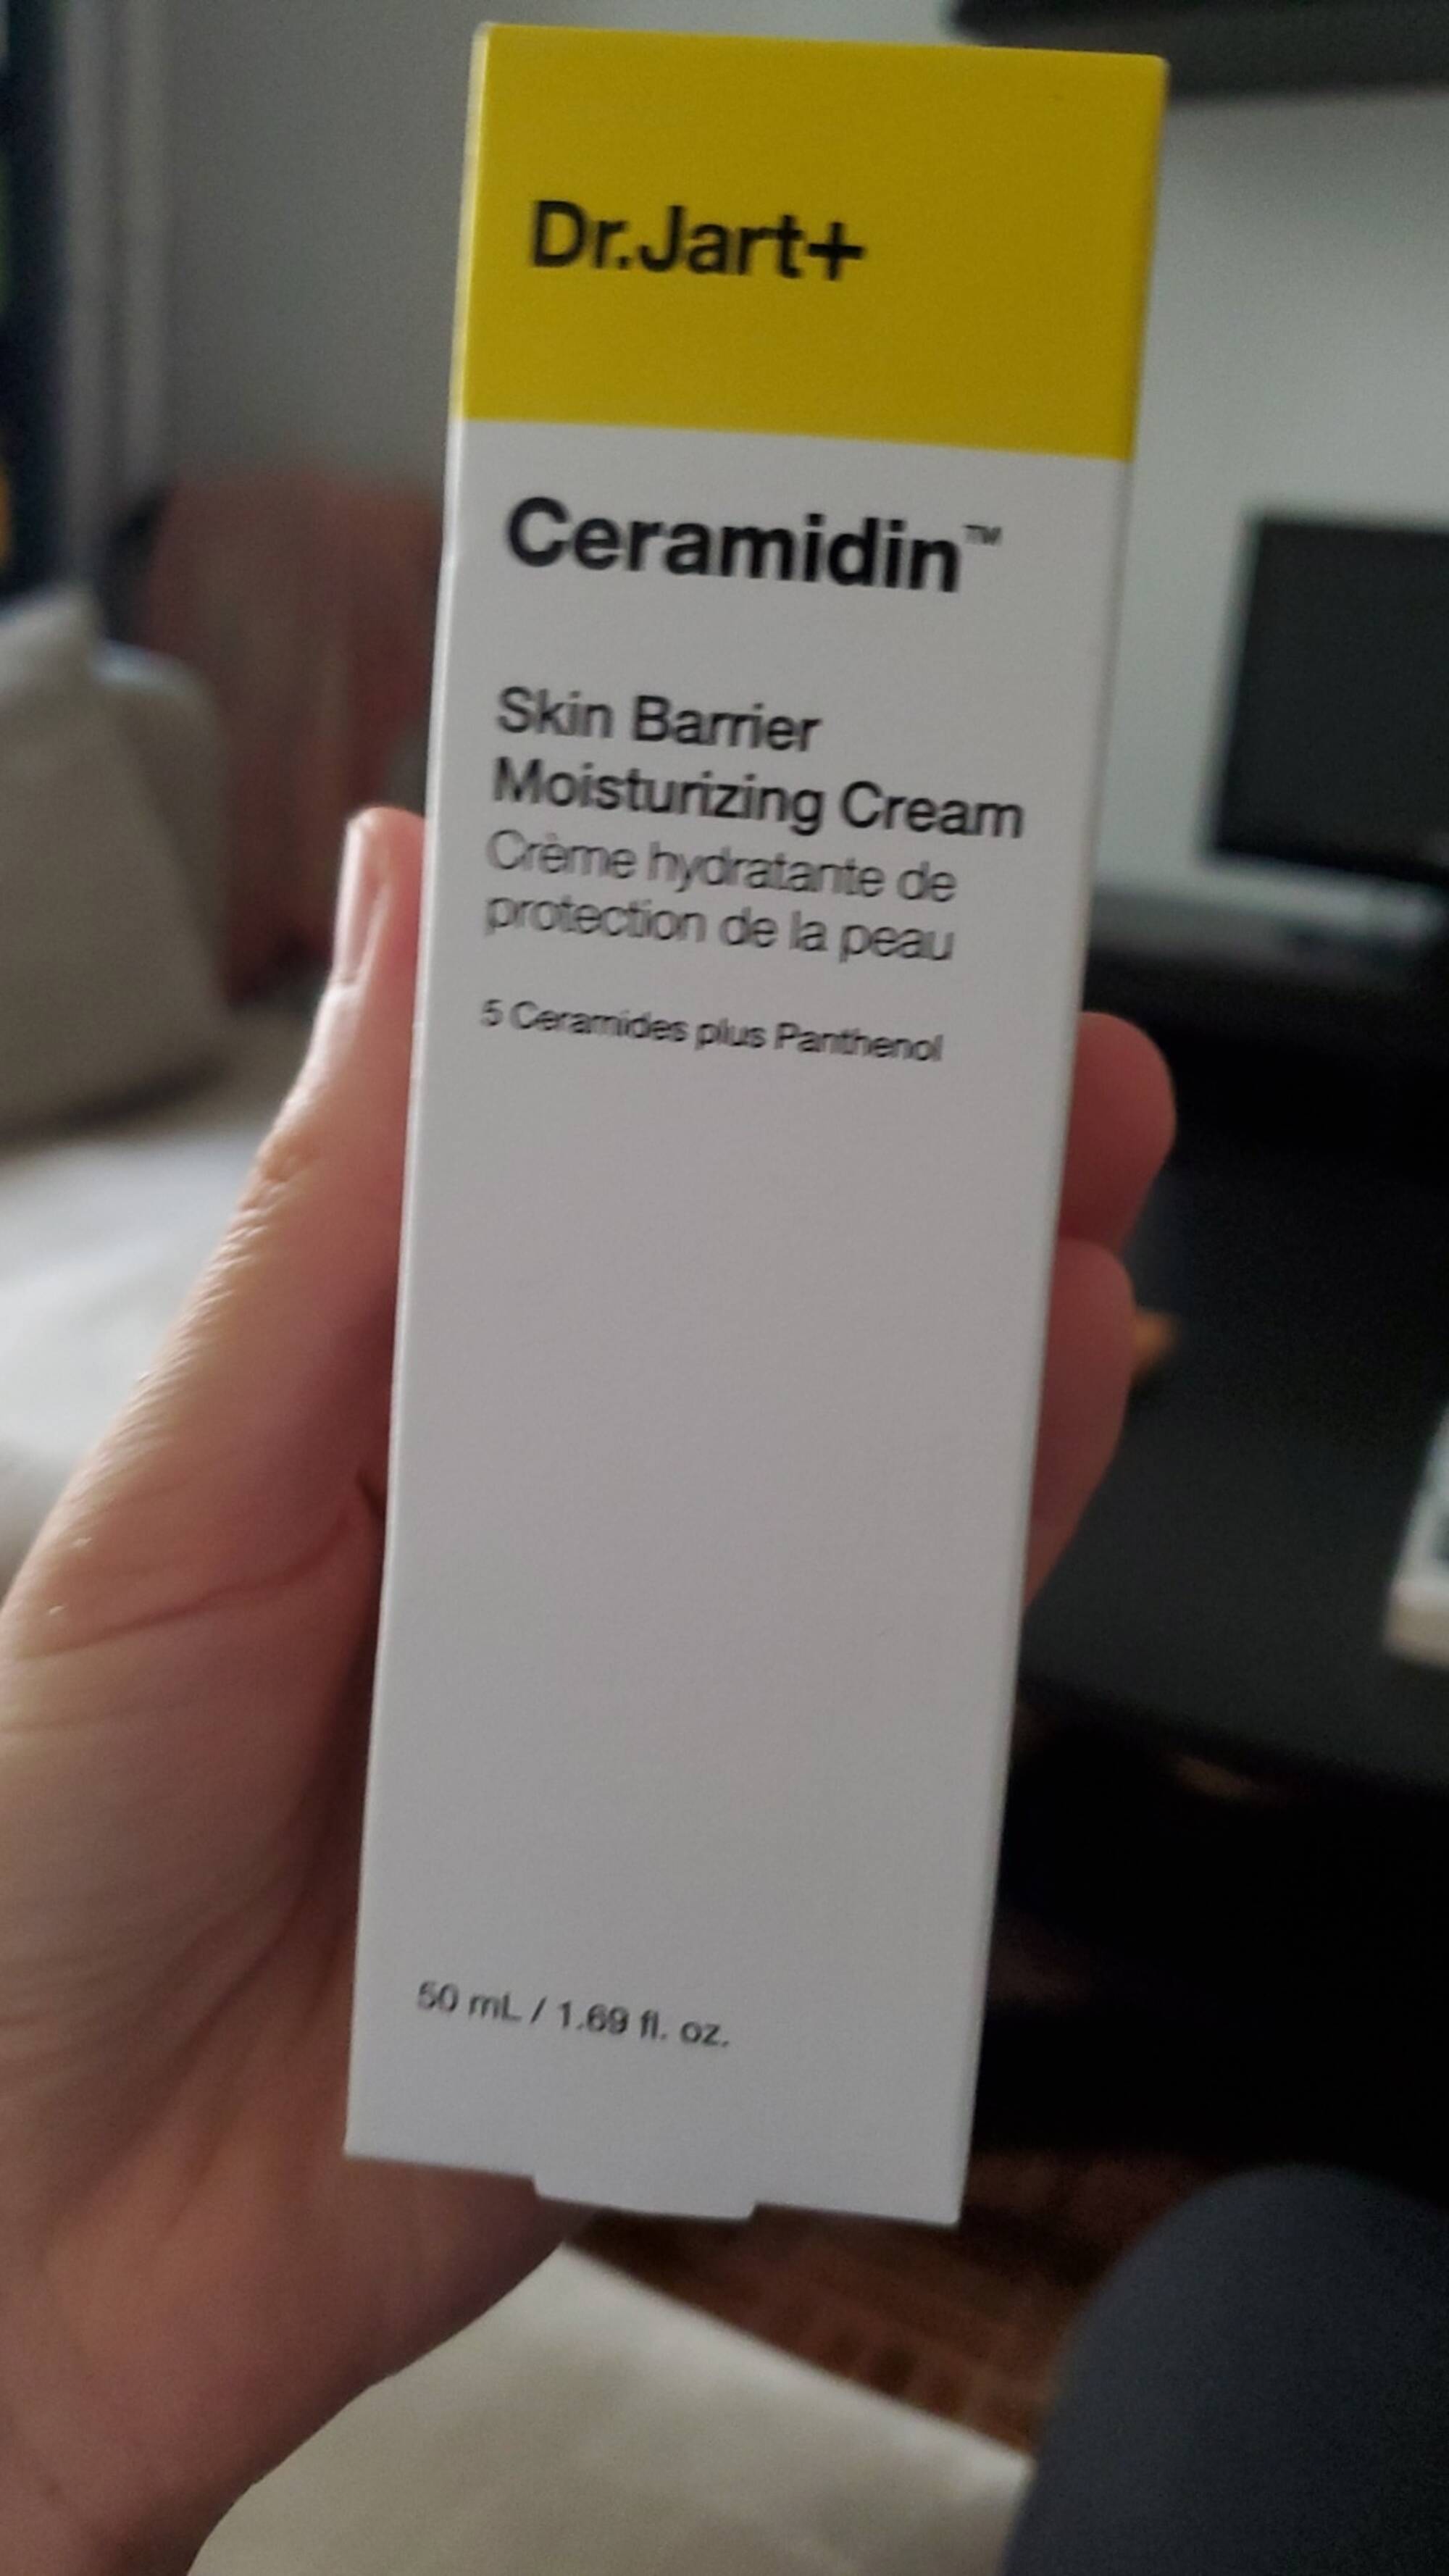 DR.JART+ - Ceramidin_crème hydratante de protection de la peau